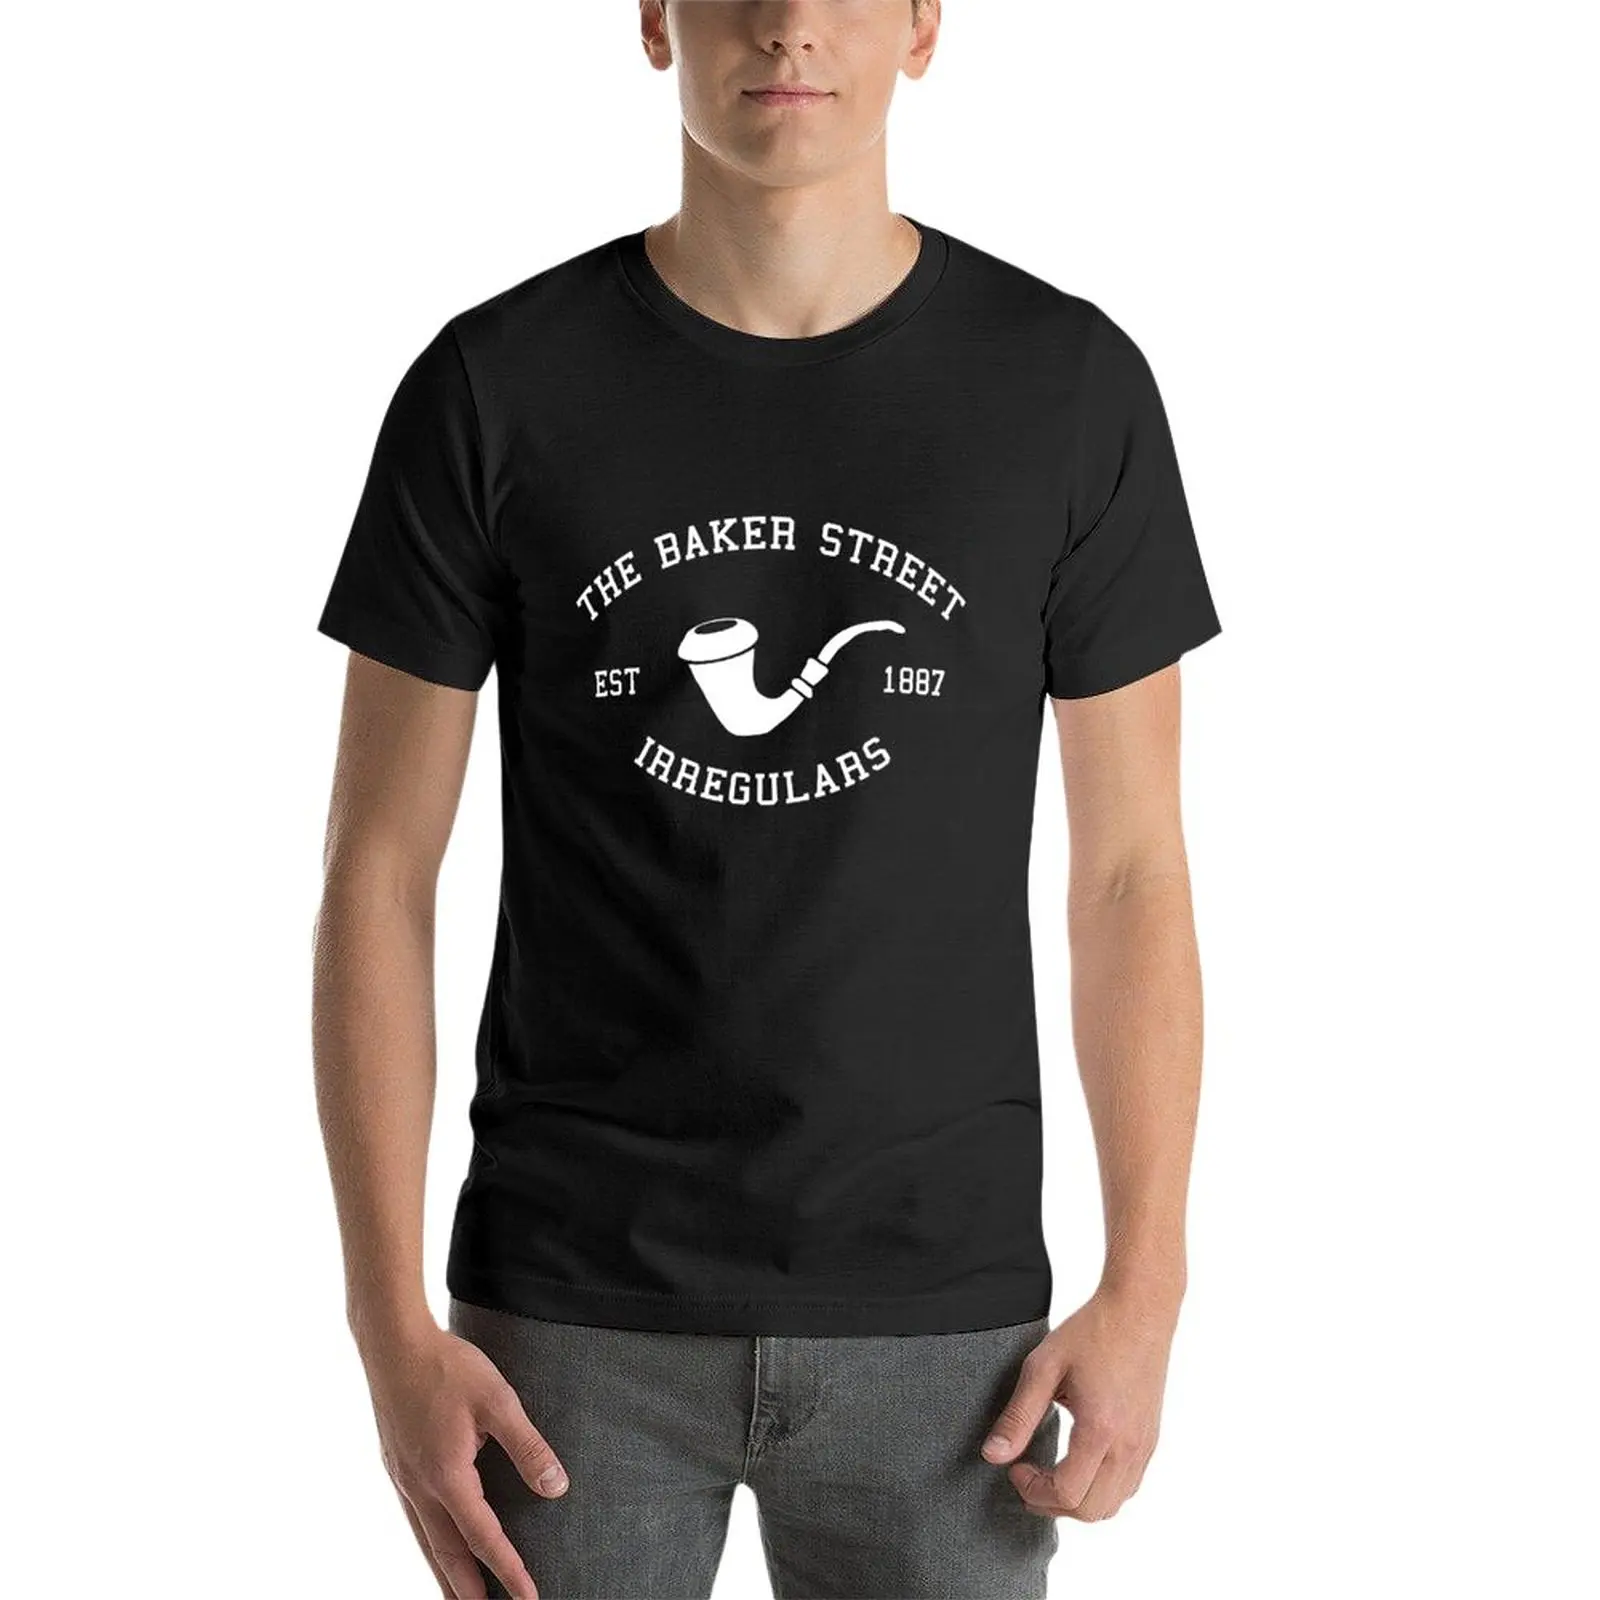 Novo A Baker Street Irregulares T-Shirt personalizada camiseta meninos branco t-shirts fã de esportes, t-shirts grandes e altos, t-shirts para os homens . ' - ' . 2